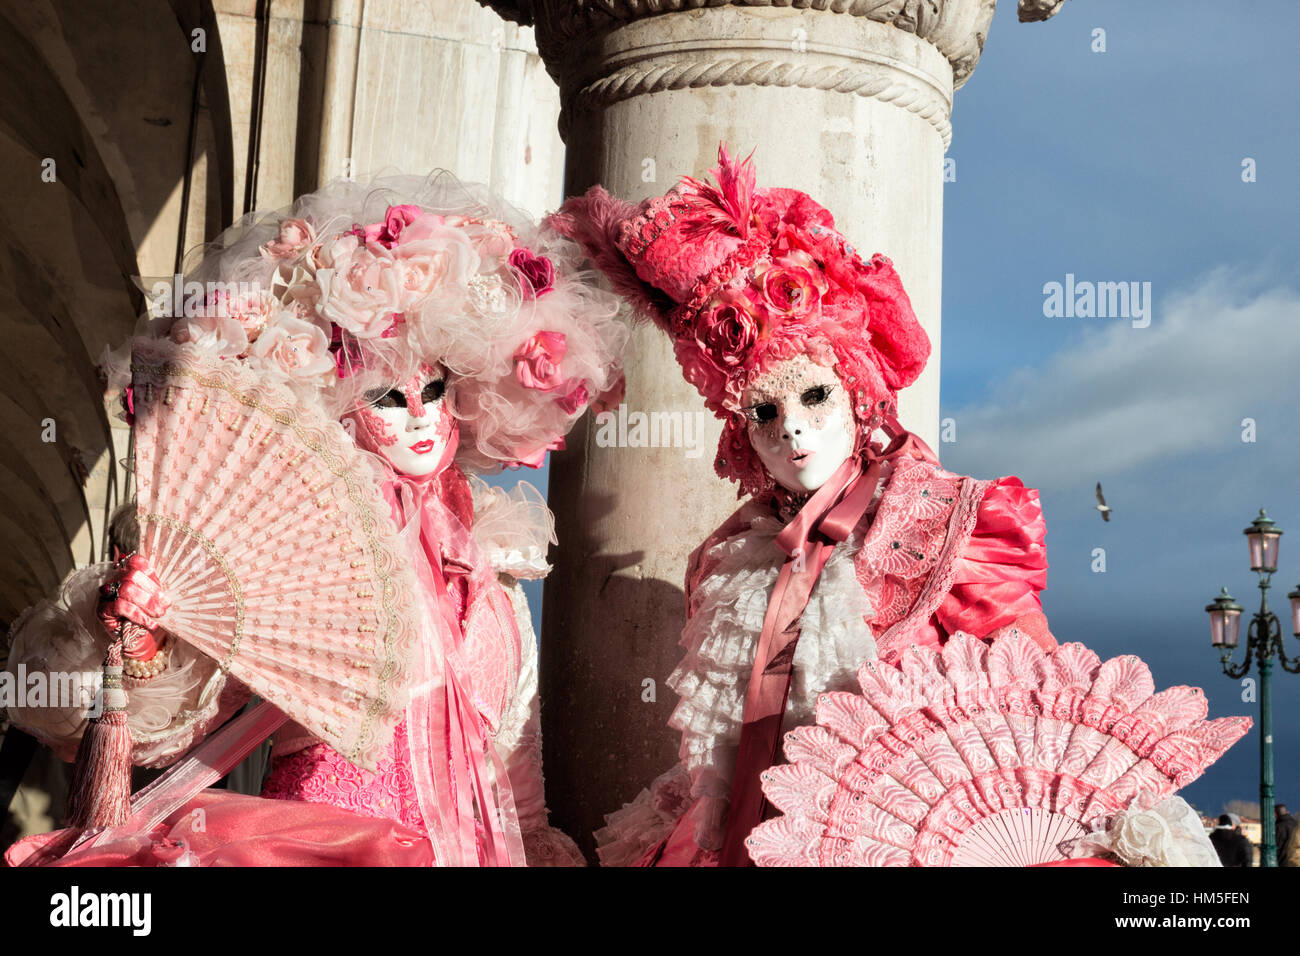 Venise - Feb 6, 2013 : les gens costumés sur la Piazza San Marco Venise pendant le carnaval. Banque D'Images